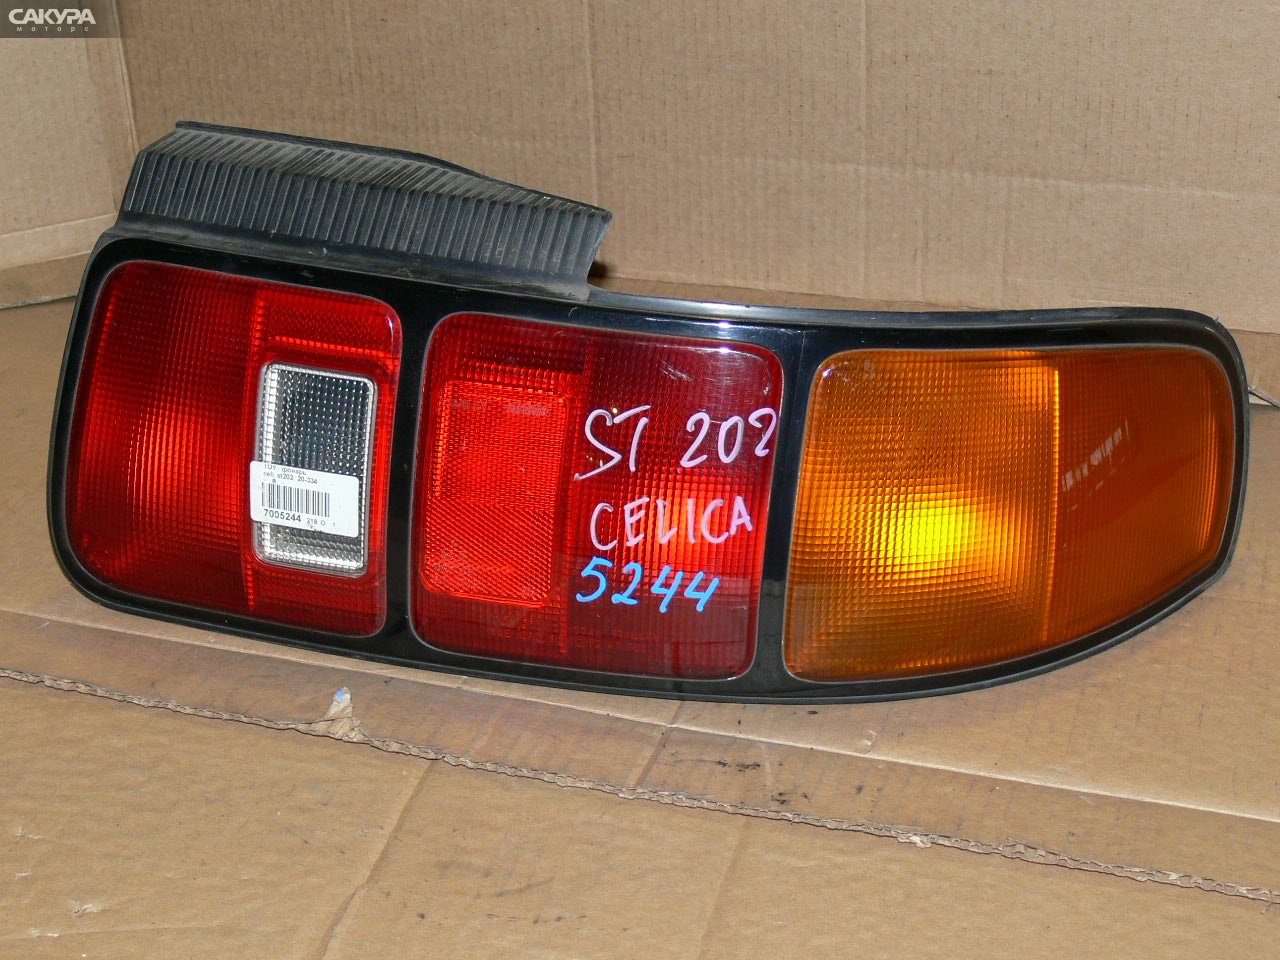 Фонарь стоп-сигнала правый Toyota Celica ST202 20-334: купить в Сакура Иркутск.